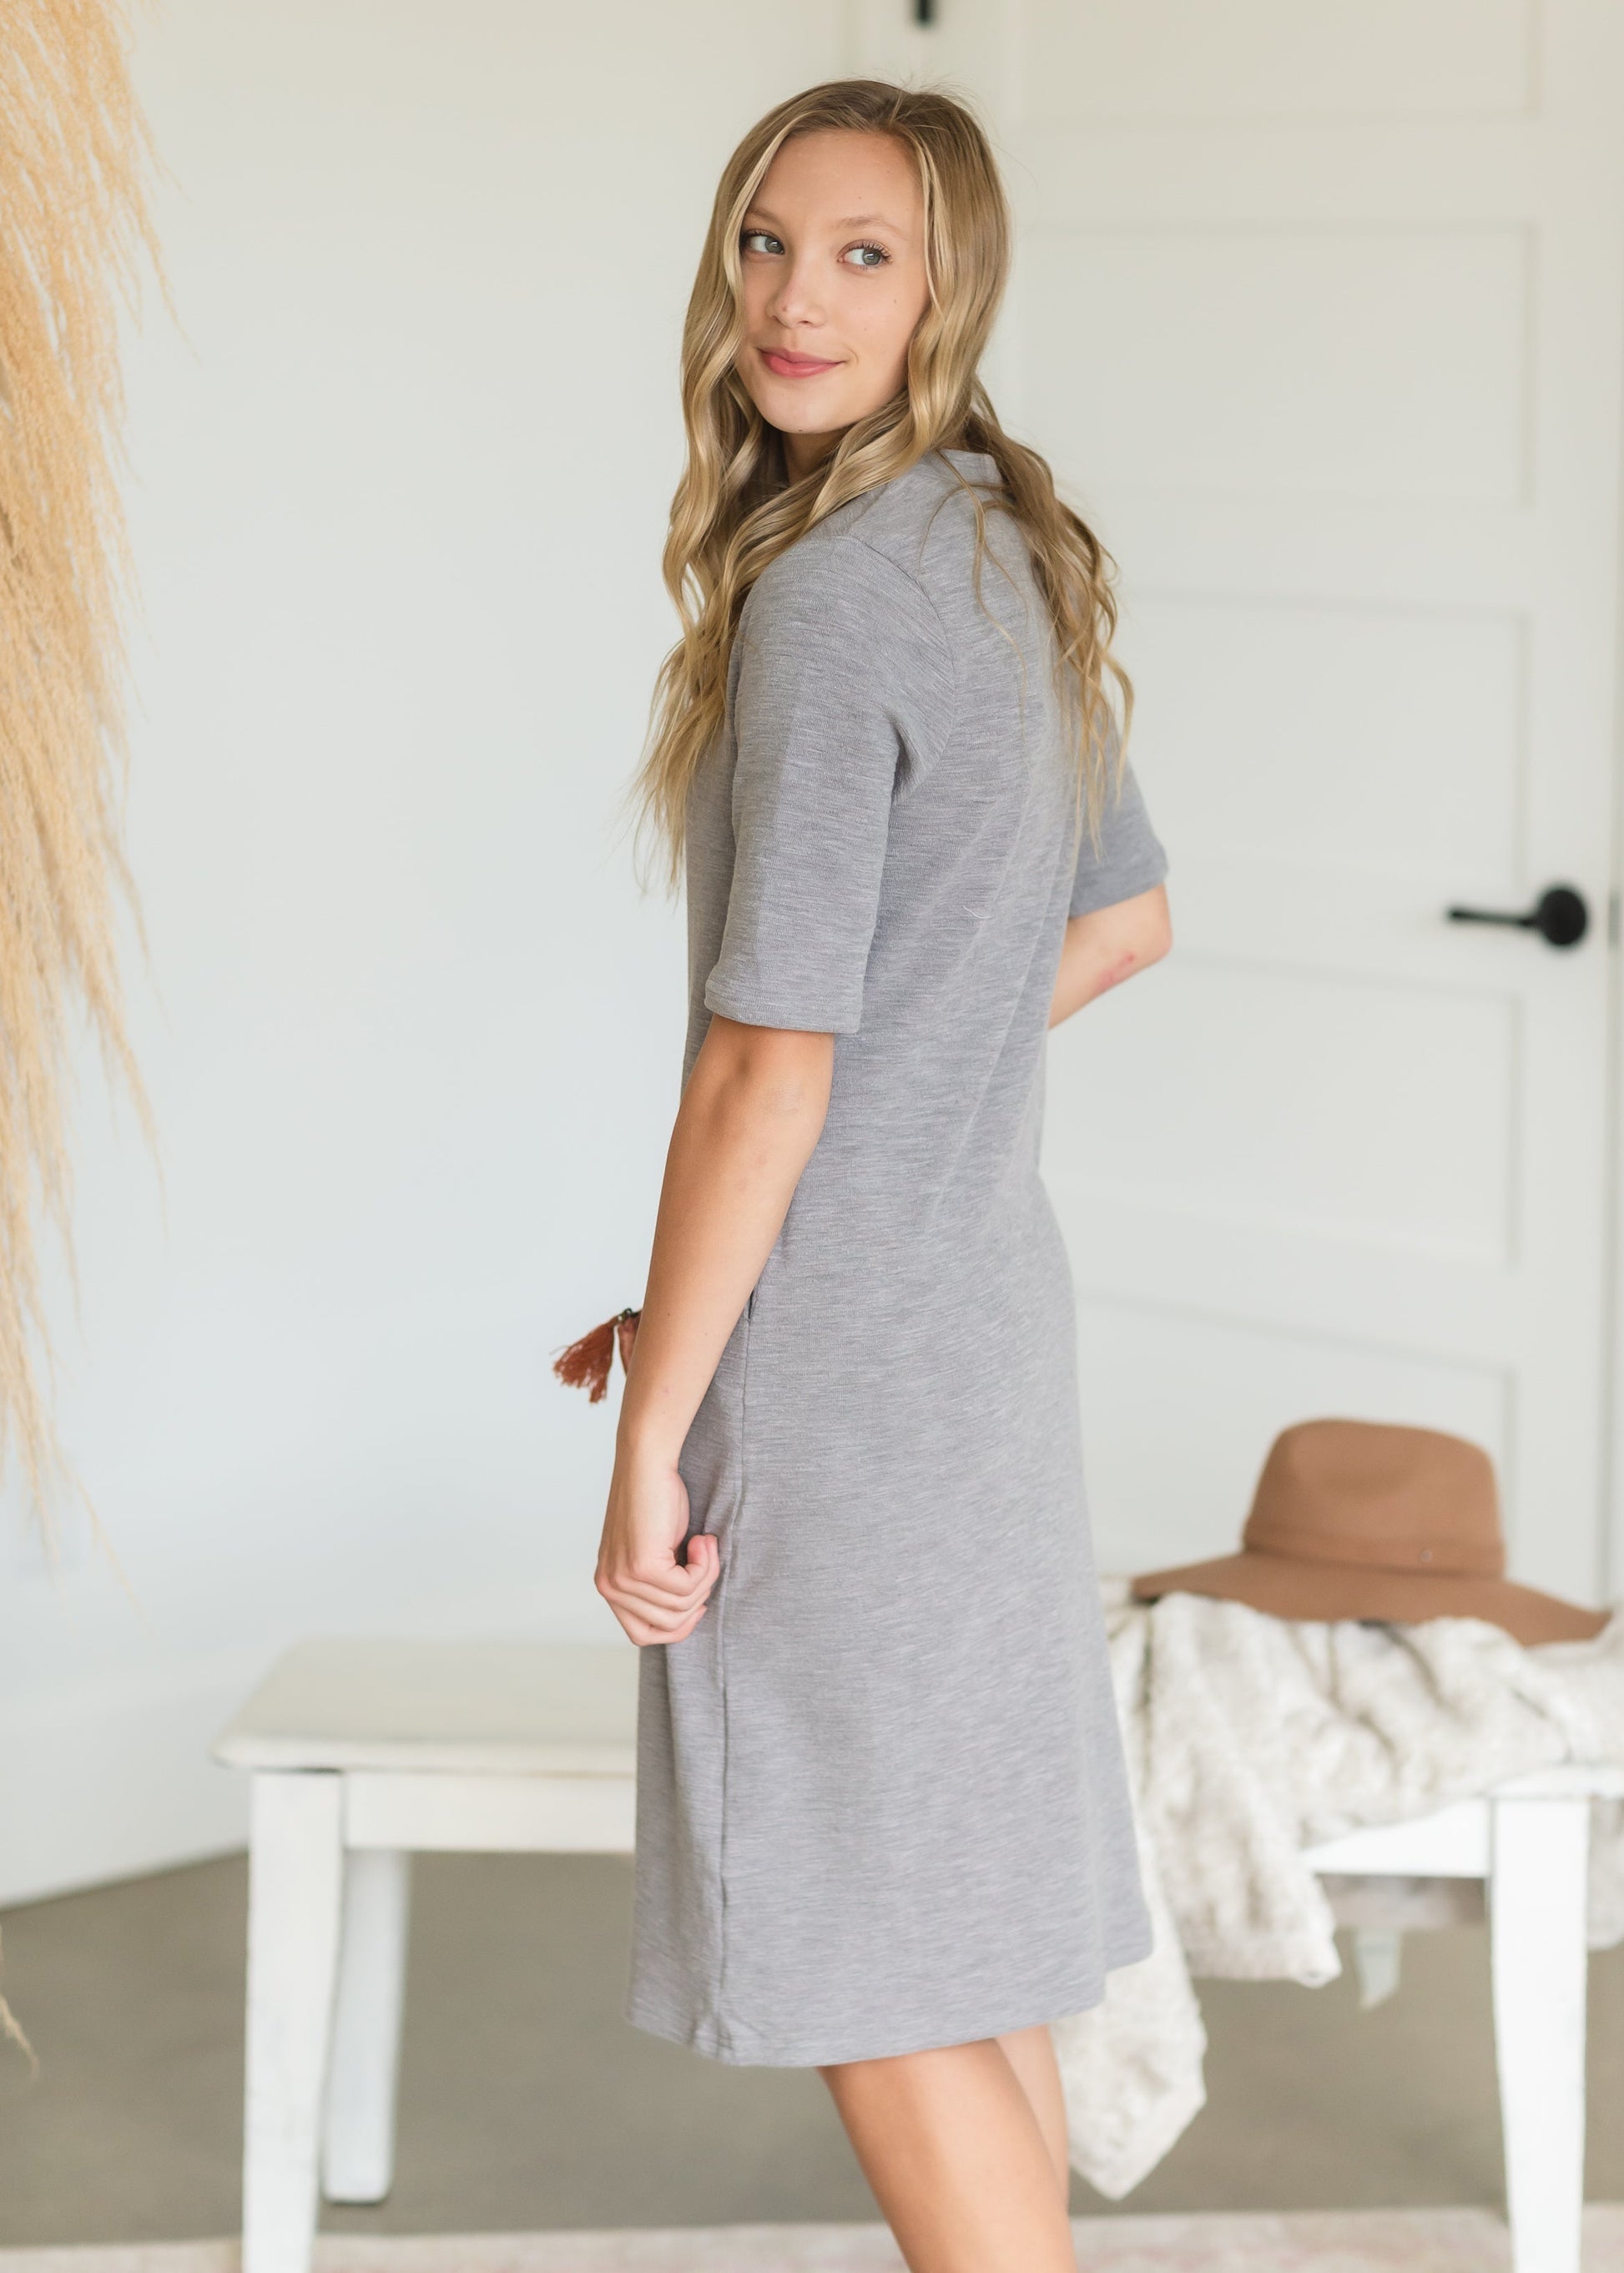 Gray Mockneck Textured Knit Dress - FINAL SALE Dresses